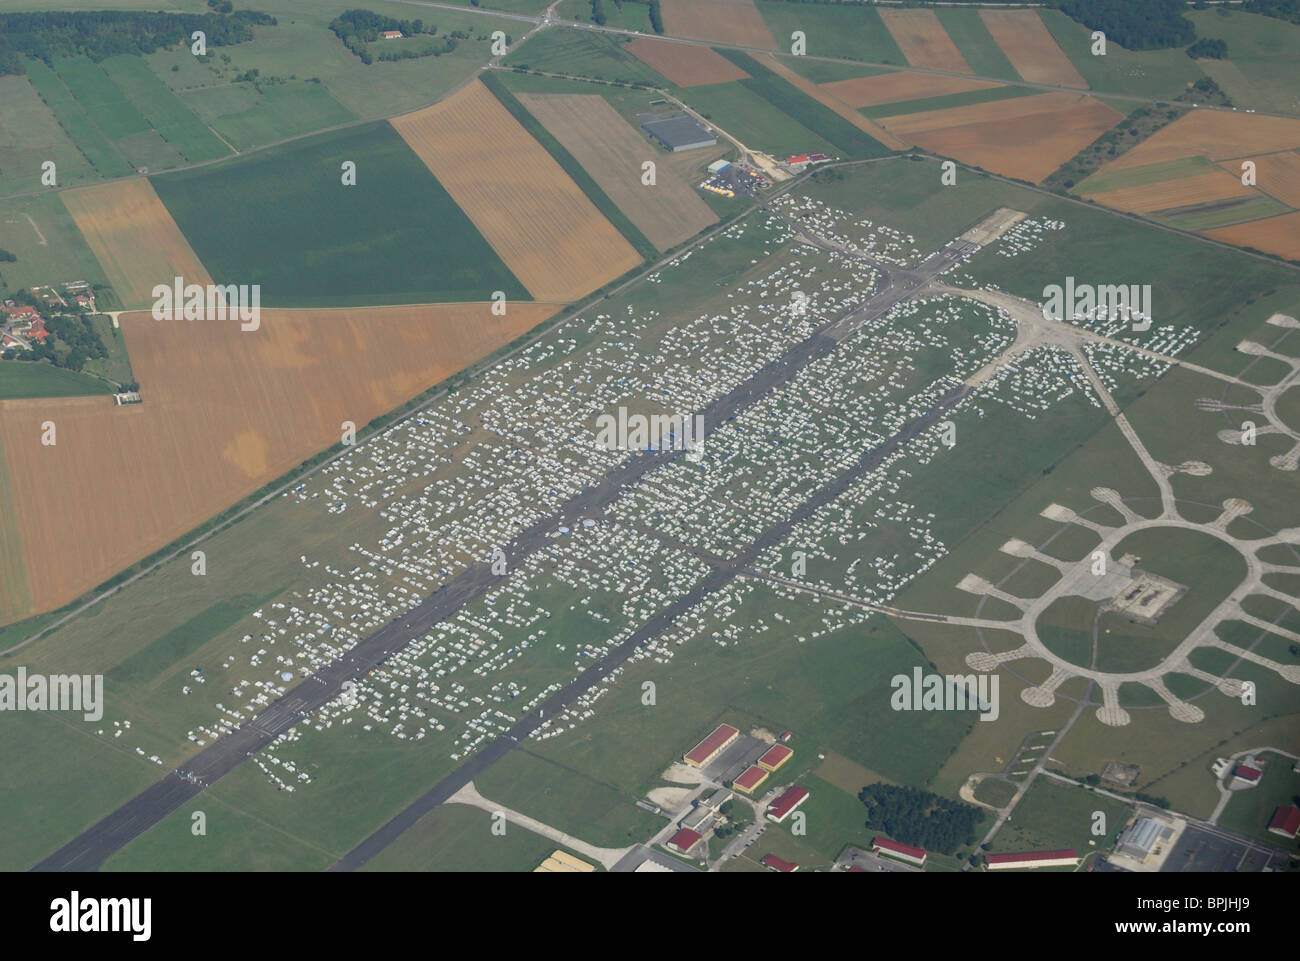 Luftaufnahme des Flughafen von Chaumont besetzt von 25 000 Zigeunern (20.08.10), Haute-Marne, Region Champagne-Ardenne, Frankreich Stockfoto